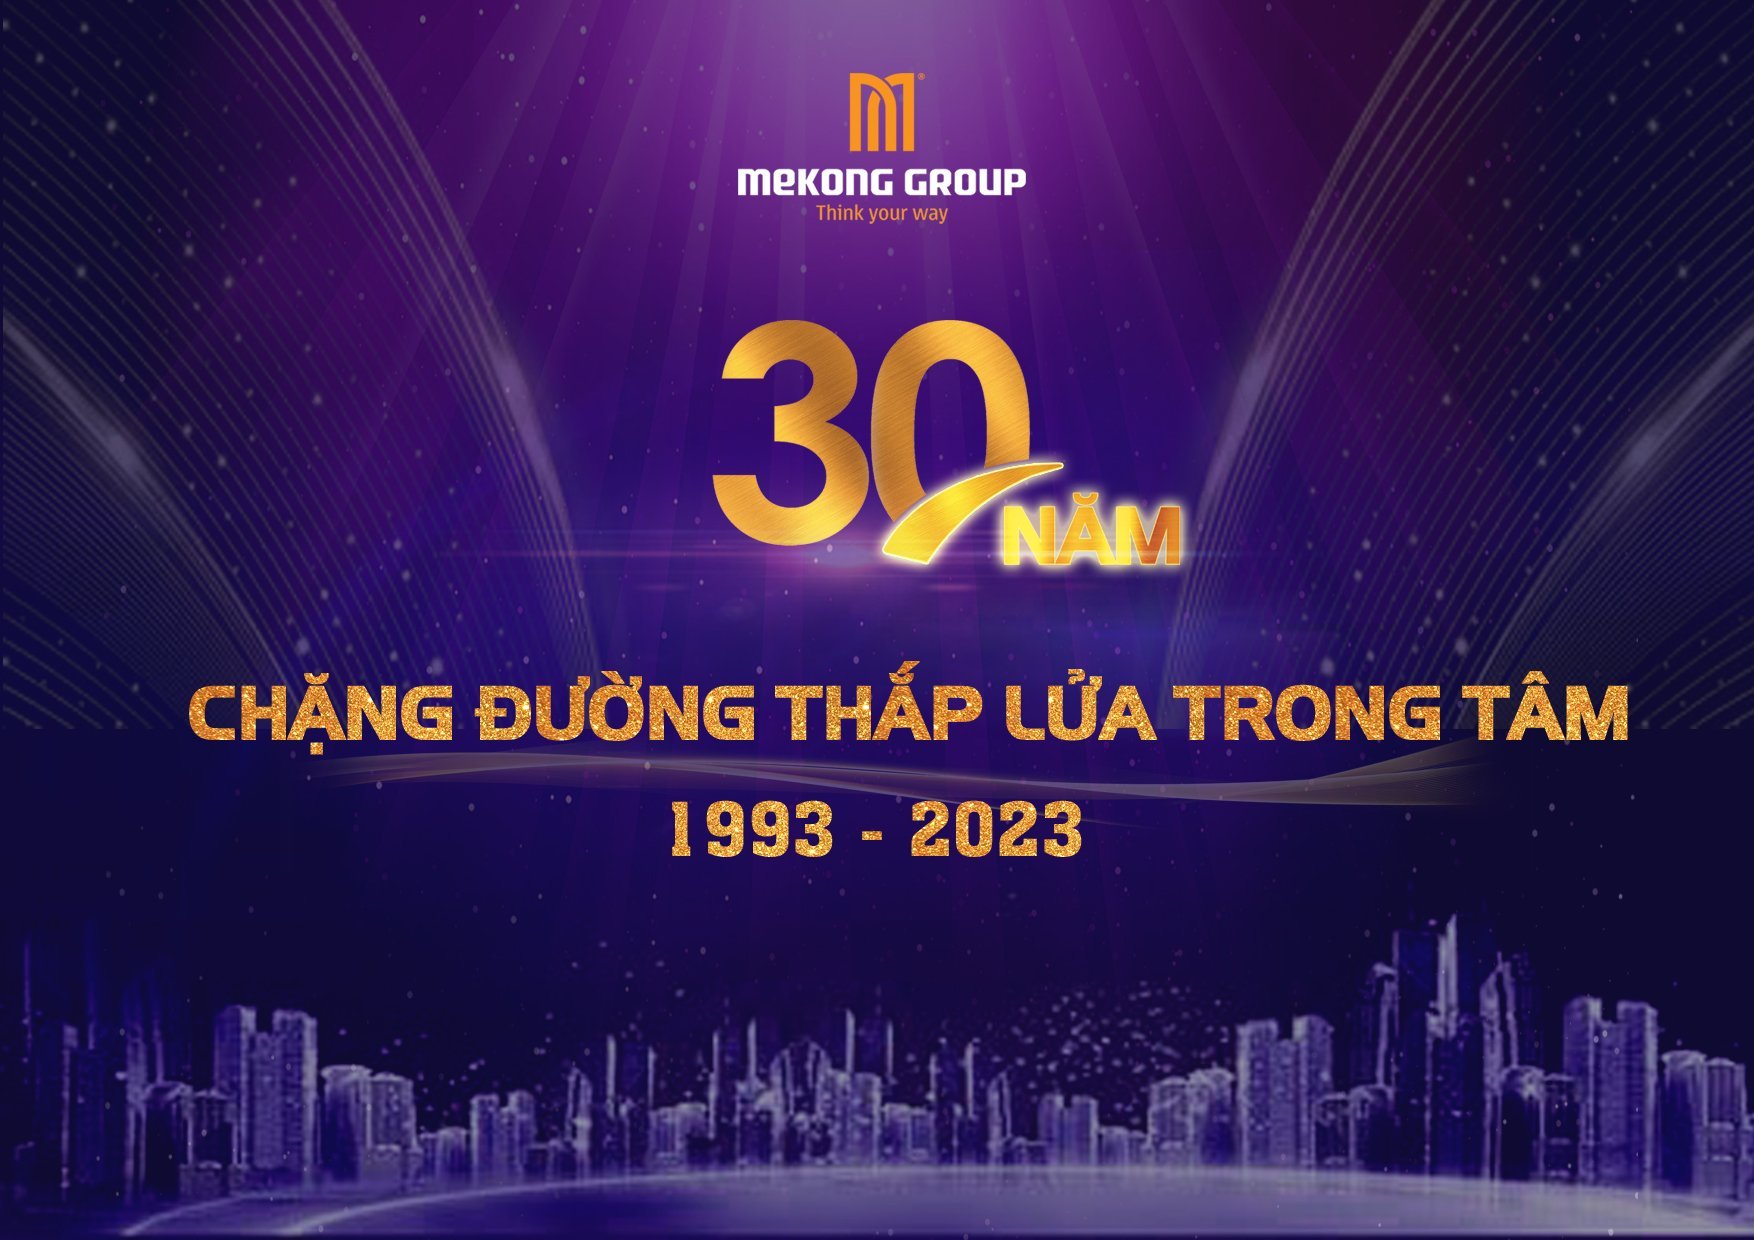 Mekong Group (MCK: VC3) – 30 năm chặng đường thắp lửa trong tim